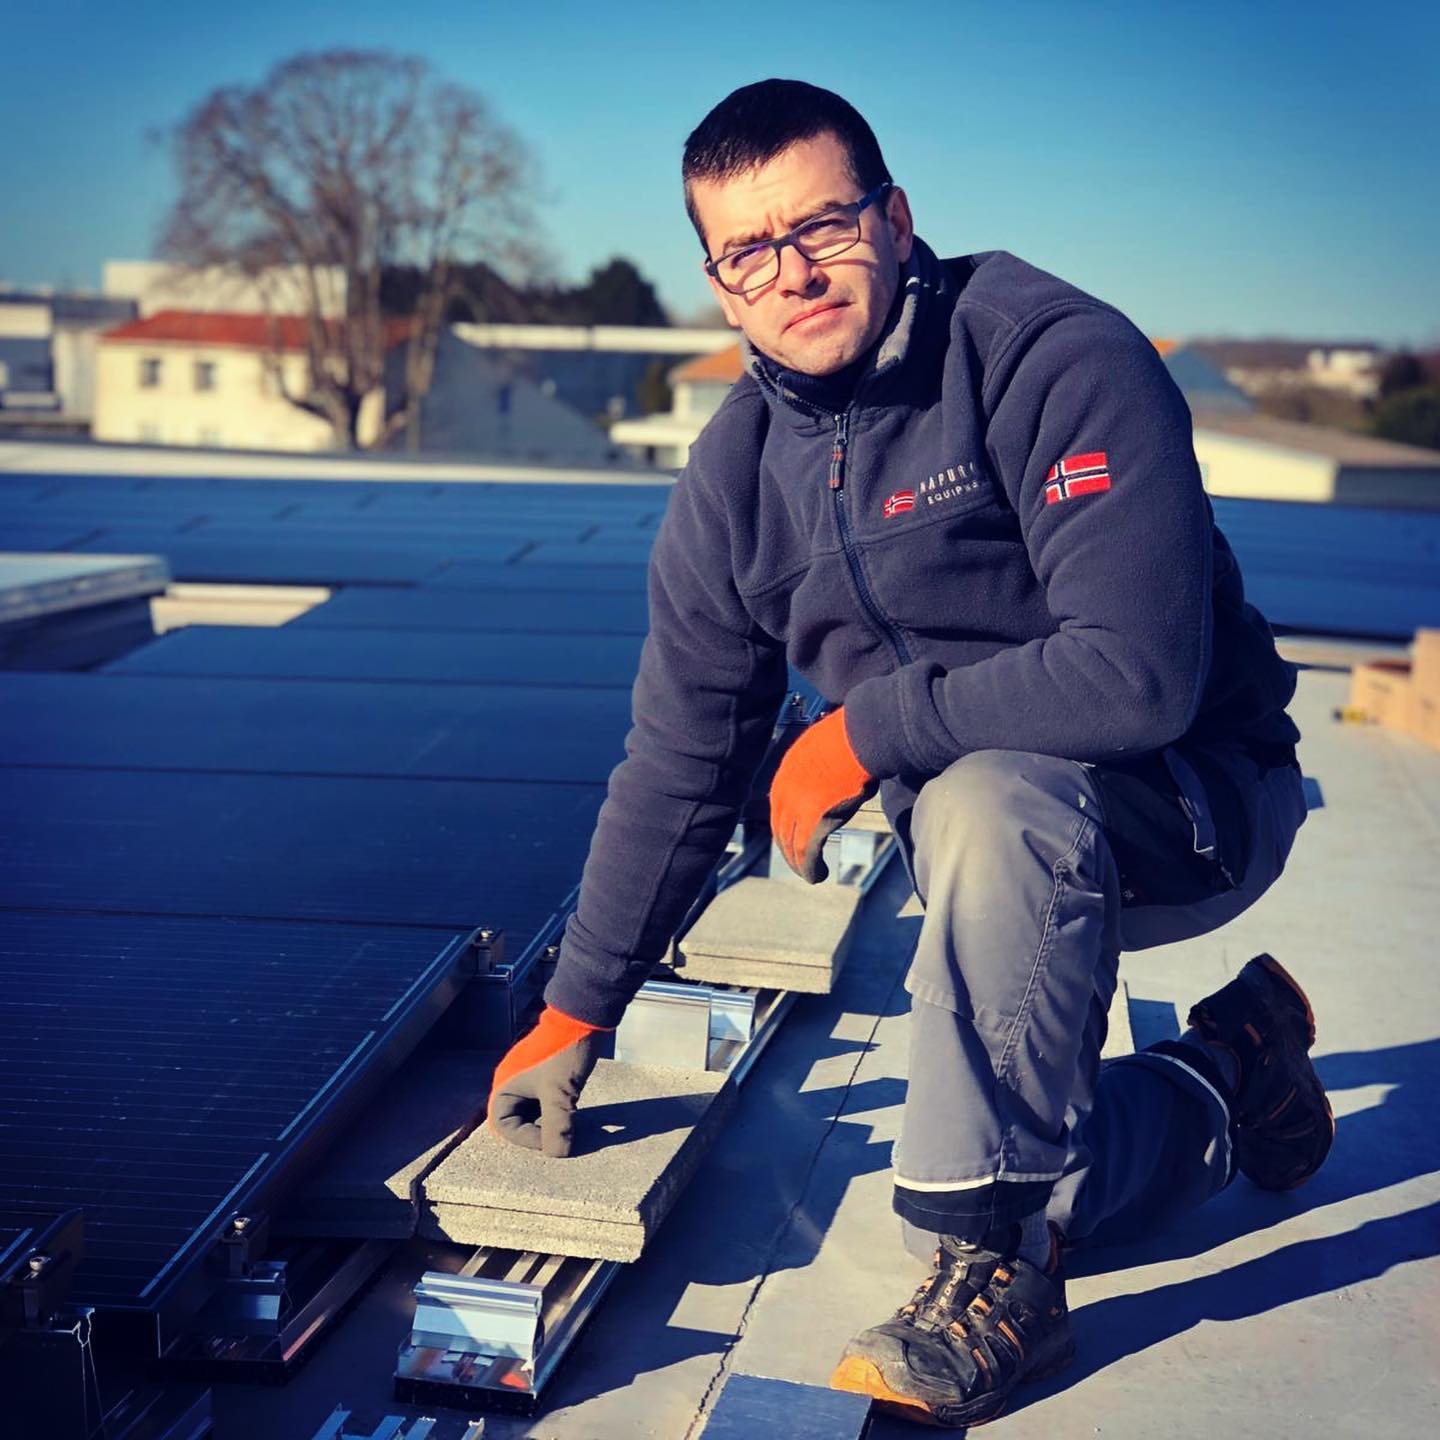 Installation de panneaux solaires sur un toit